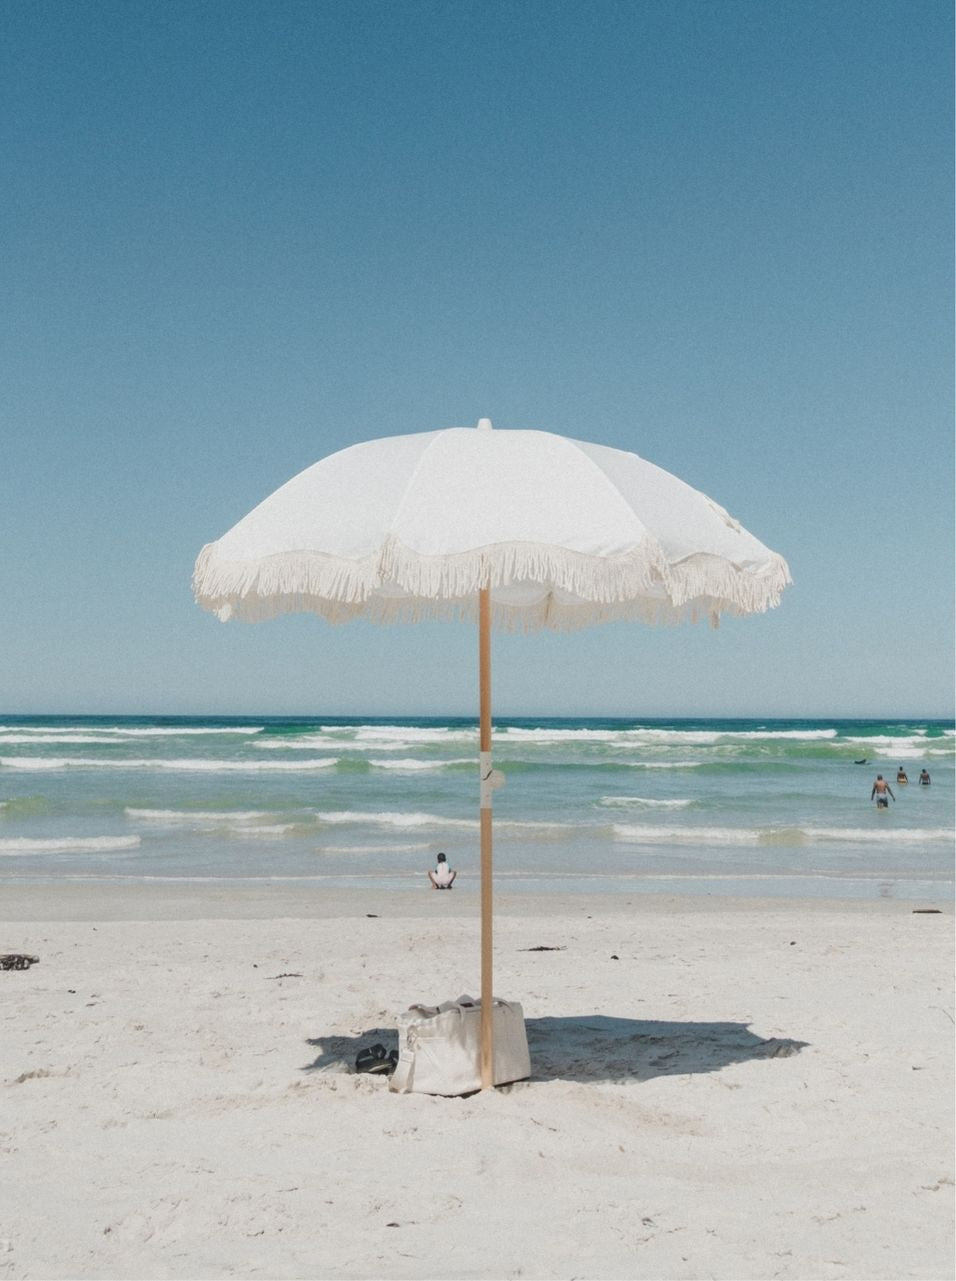 The Clifton Beach Premium Umbrella